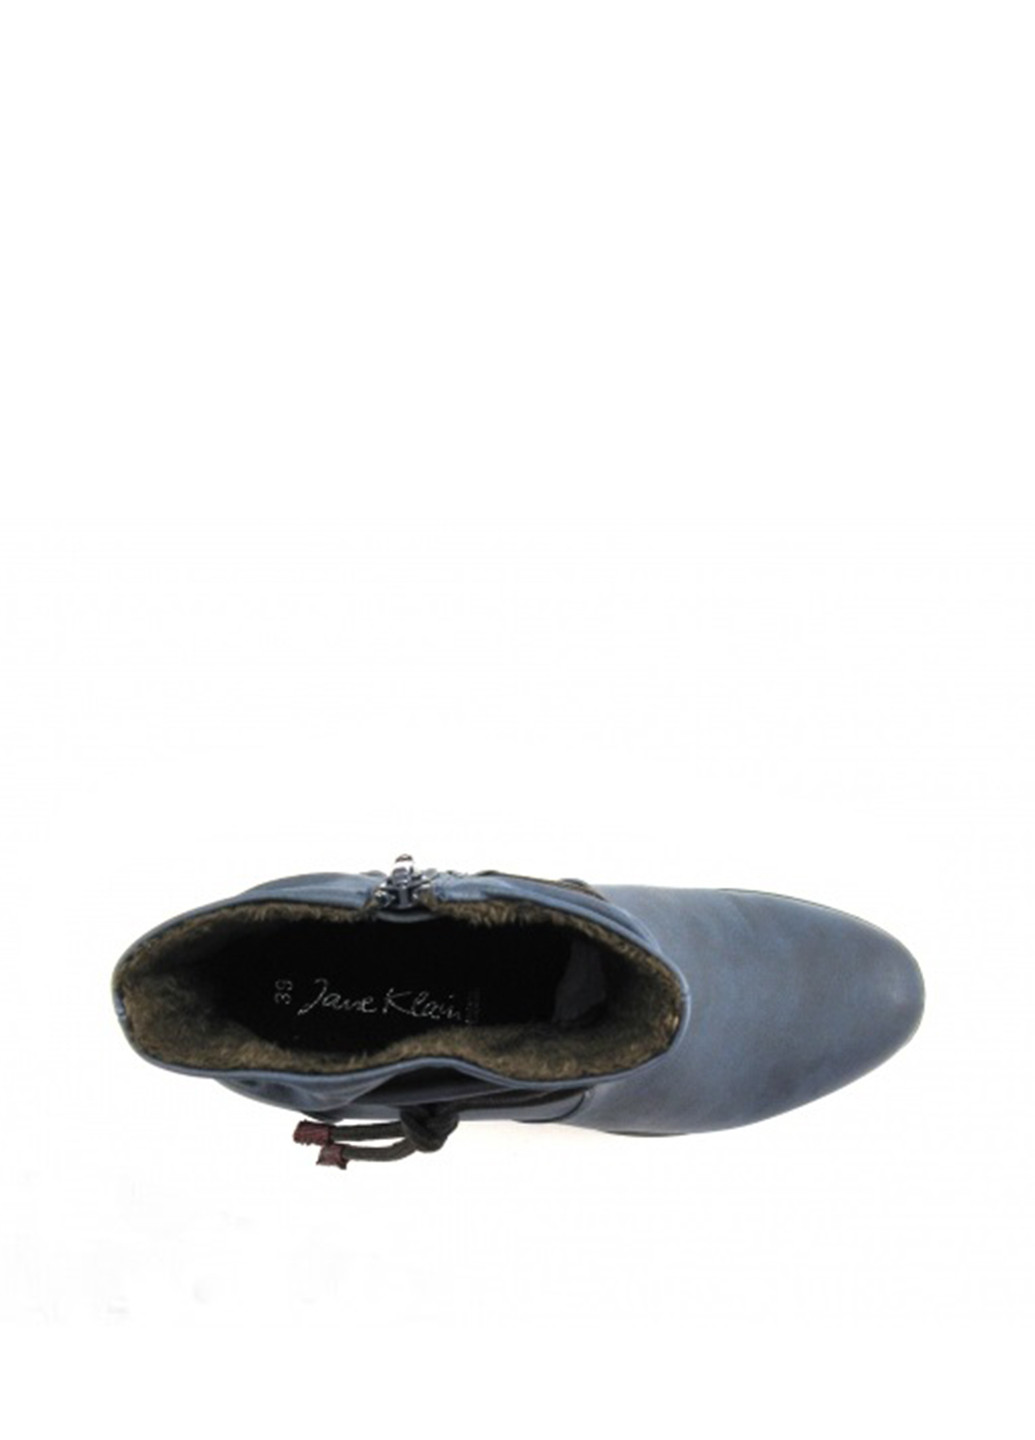 Осенние ботинки Jane Klain со шнуровкой из искусственной кожи